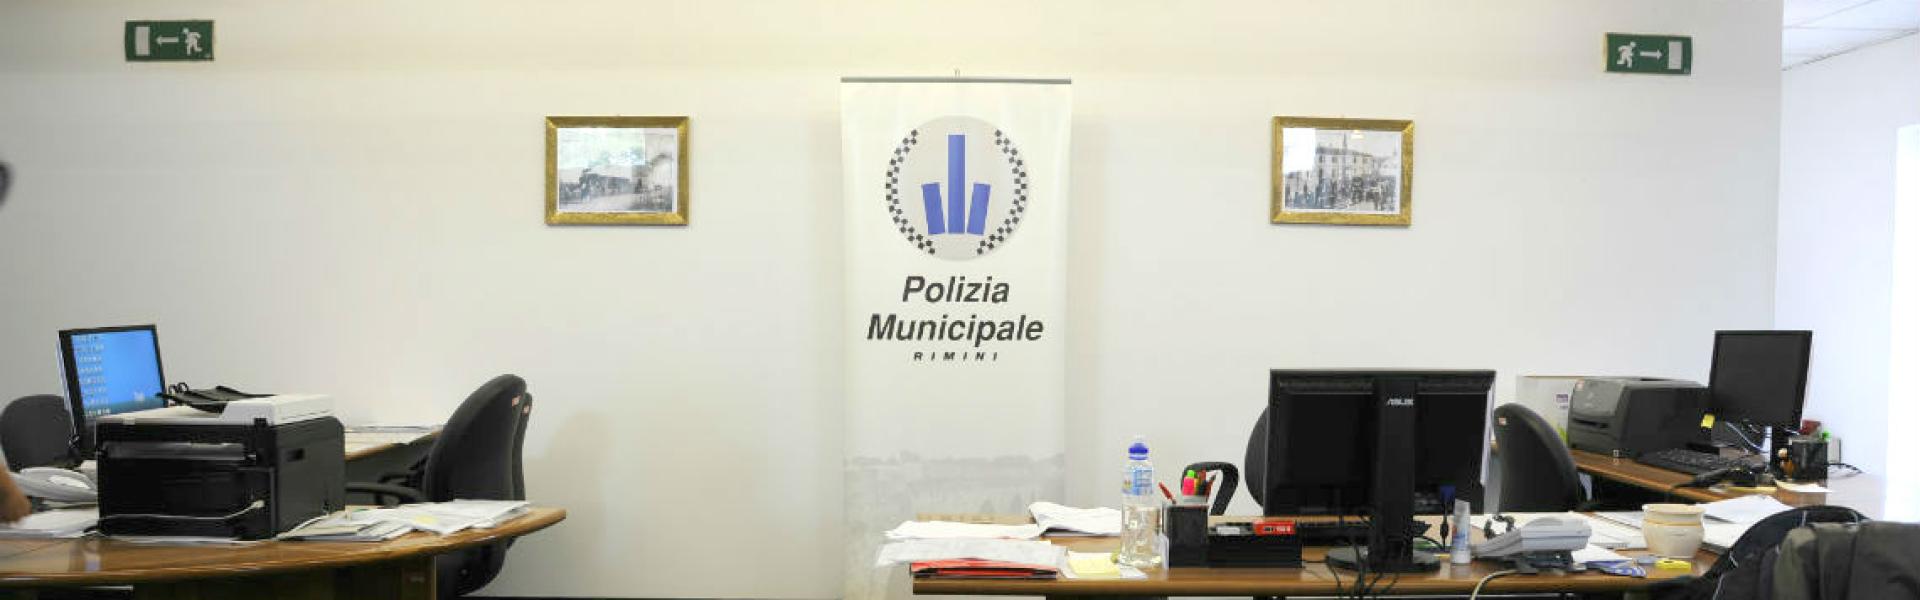 Delegazione Polizia Municipale di Corpolò - Rimini